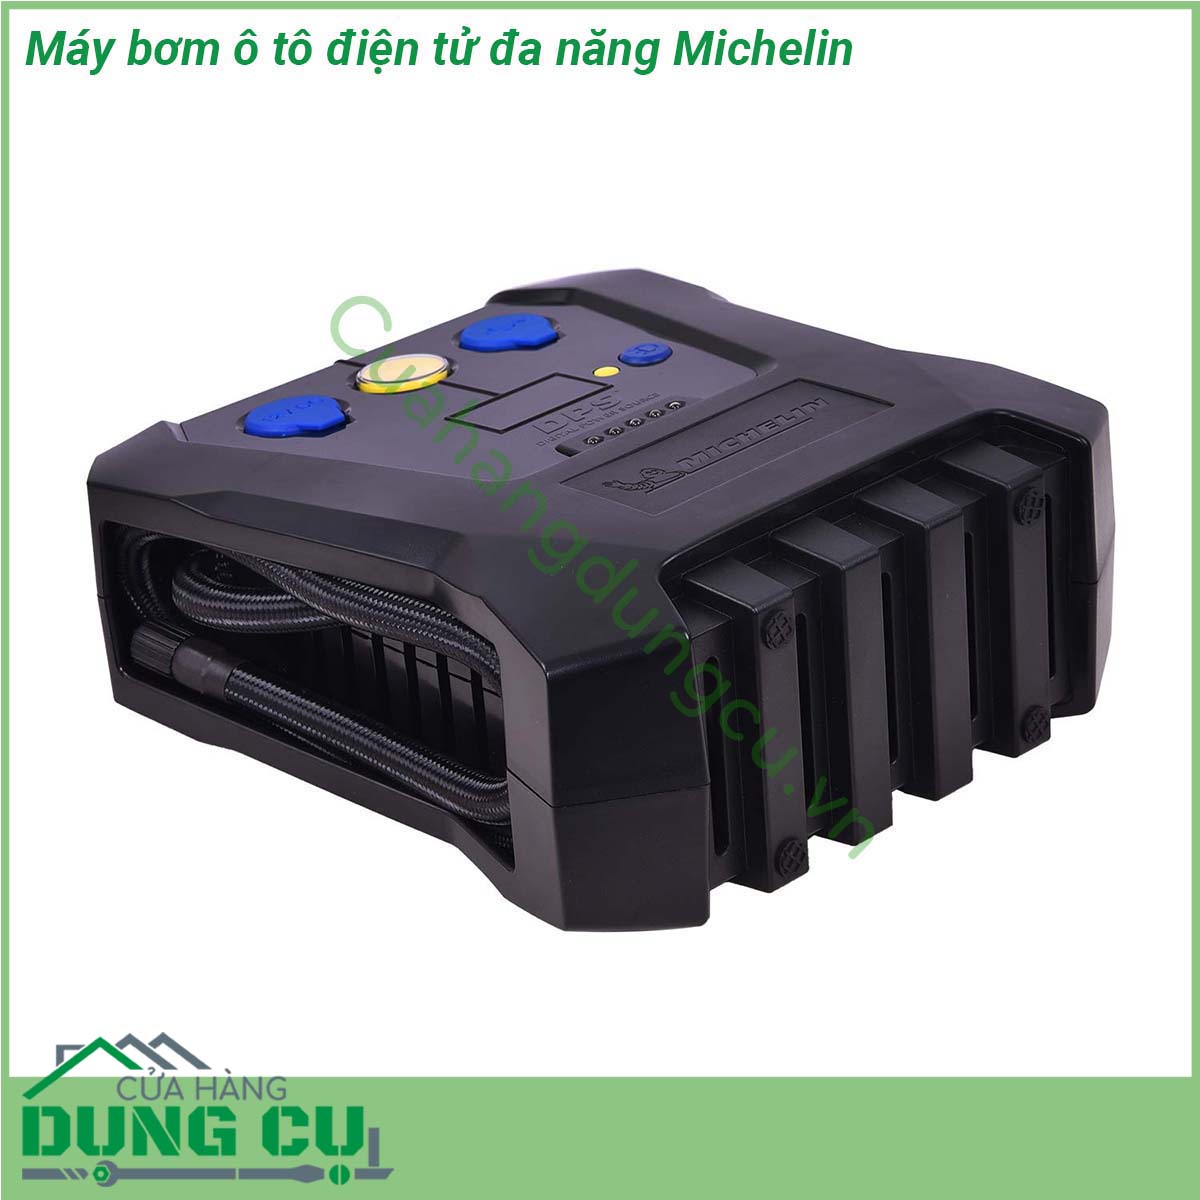 Máy bơm lốp ô tô điện tử đa năng Michelin được thiết kế với toàn bộ thân vỏ của máy được làm từ nhựa chịu lực chắc chắn cứng cáp Chất liệu nhựa nhám tinh tế đem lại cảm giác hiện đại mạnh mẽ giúp người sử dụng cảm thấy chắc chắn và hạn chế tình trạng xước khi sử dụng